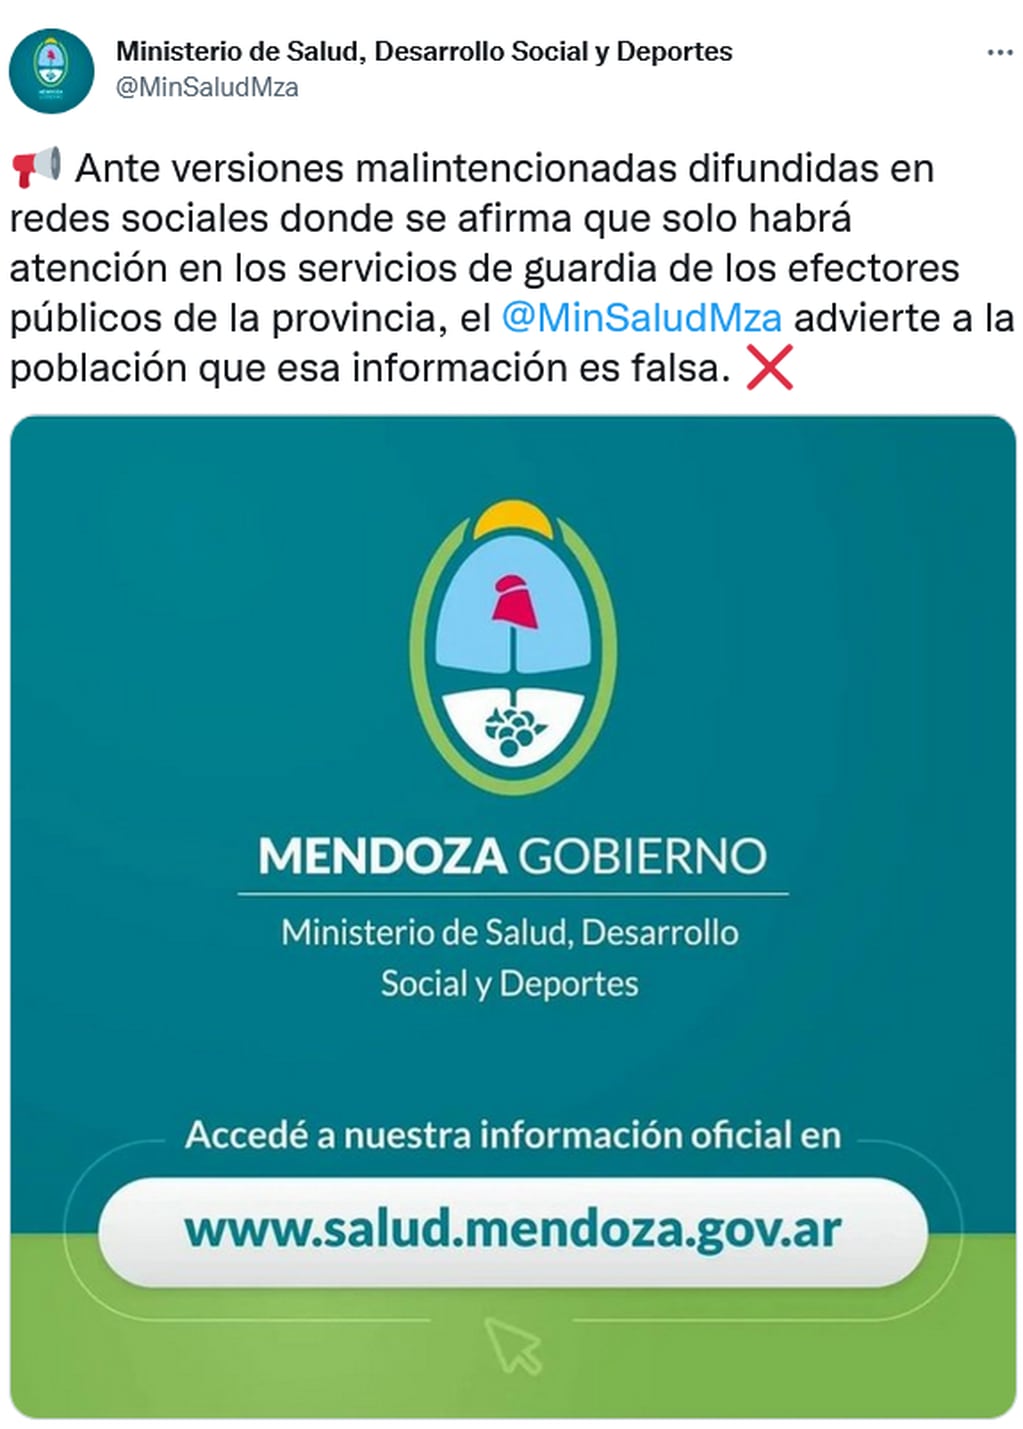 El Ministerio de Salud de Mendoza aclaró que son falsos los mensajes que circulan sobre atención en guardias durante los días de protesta.